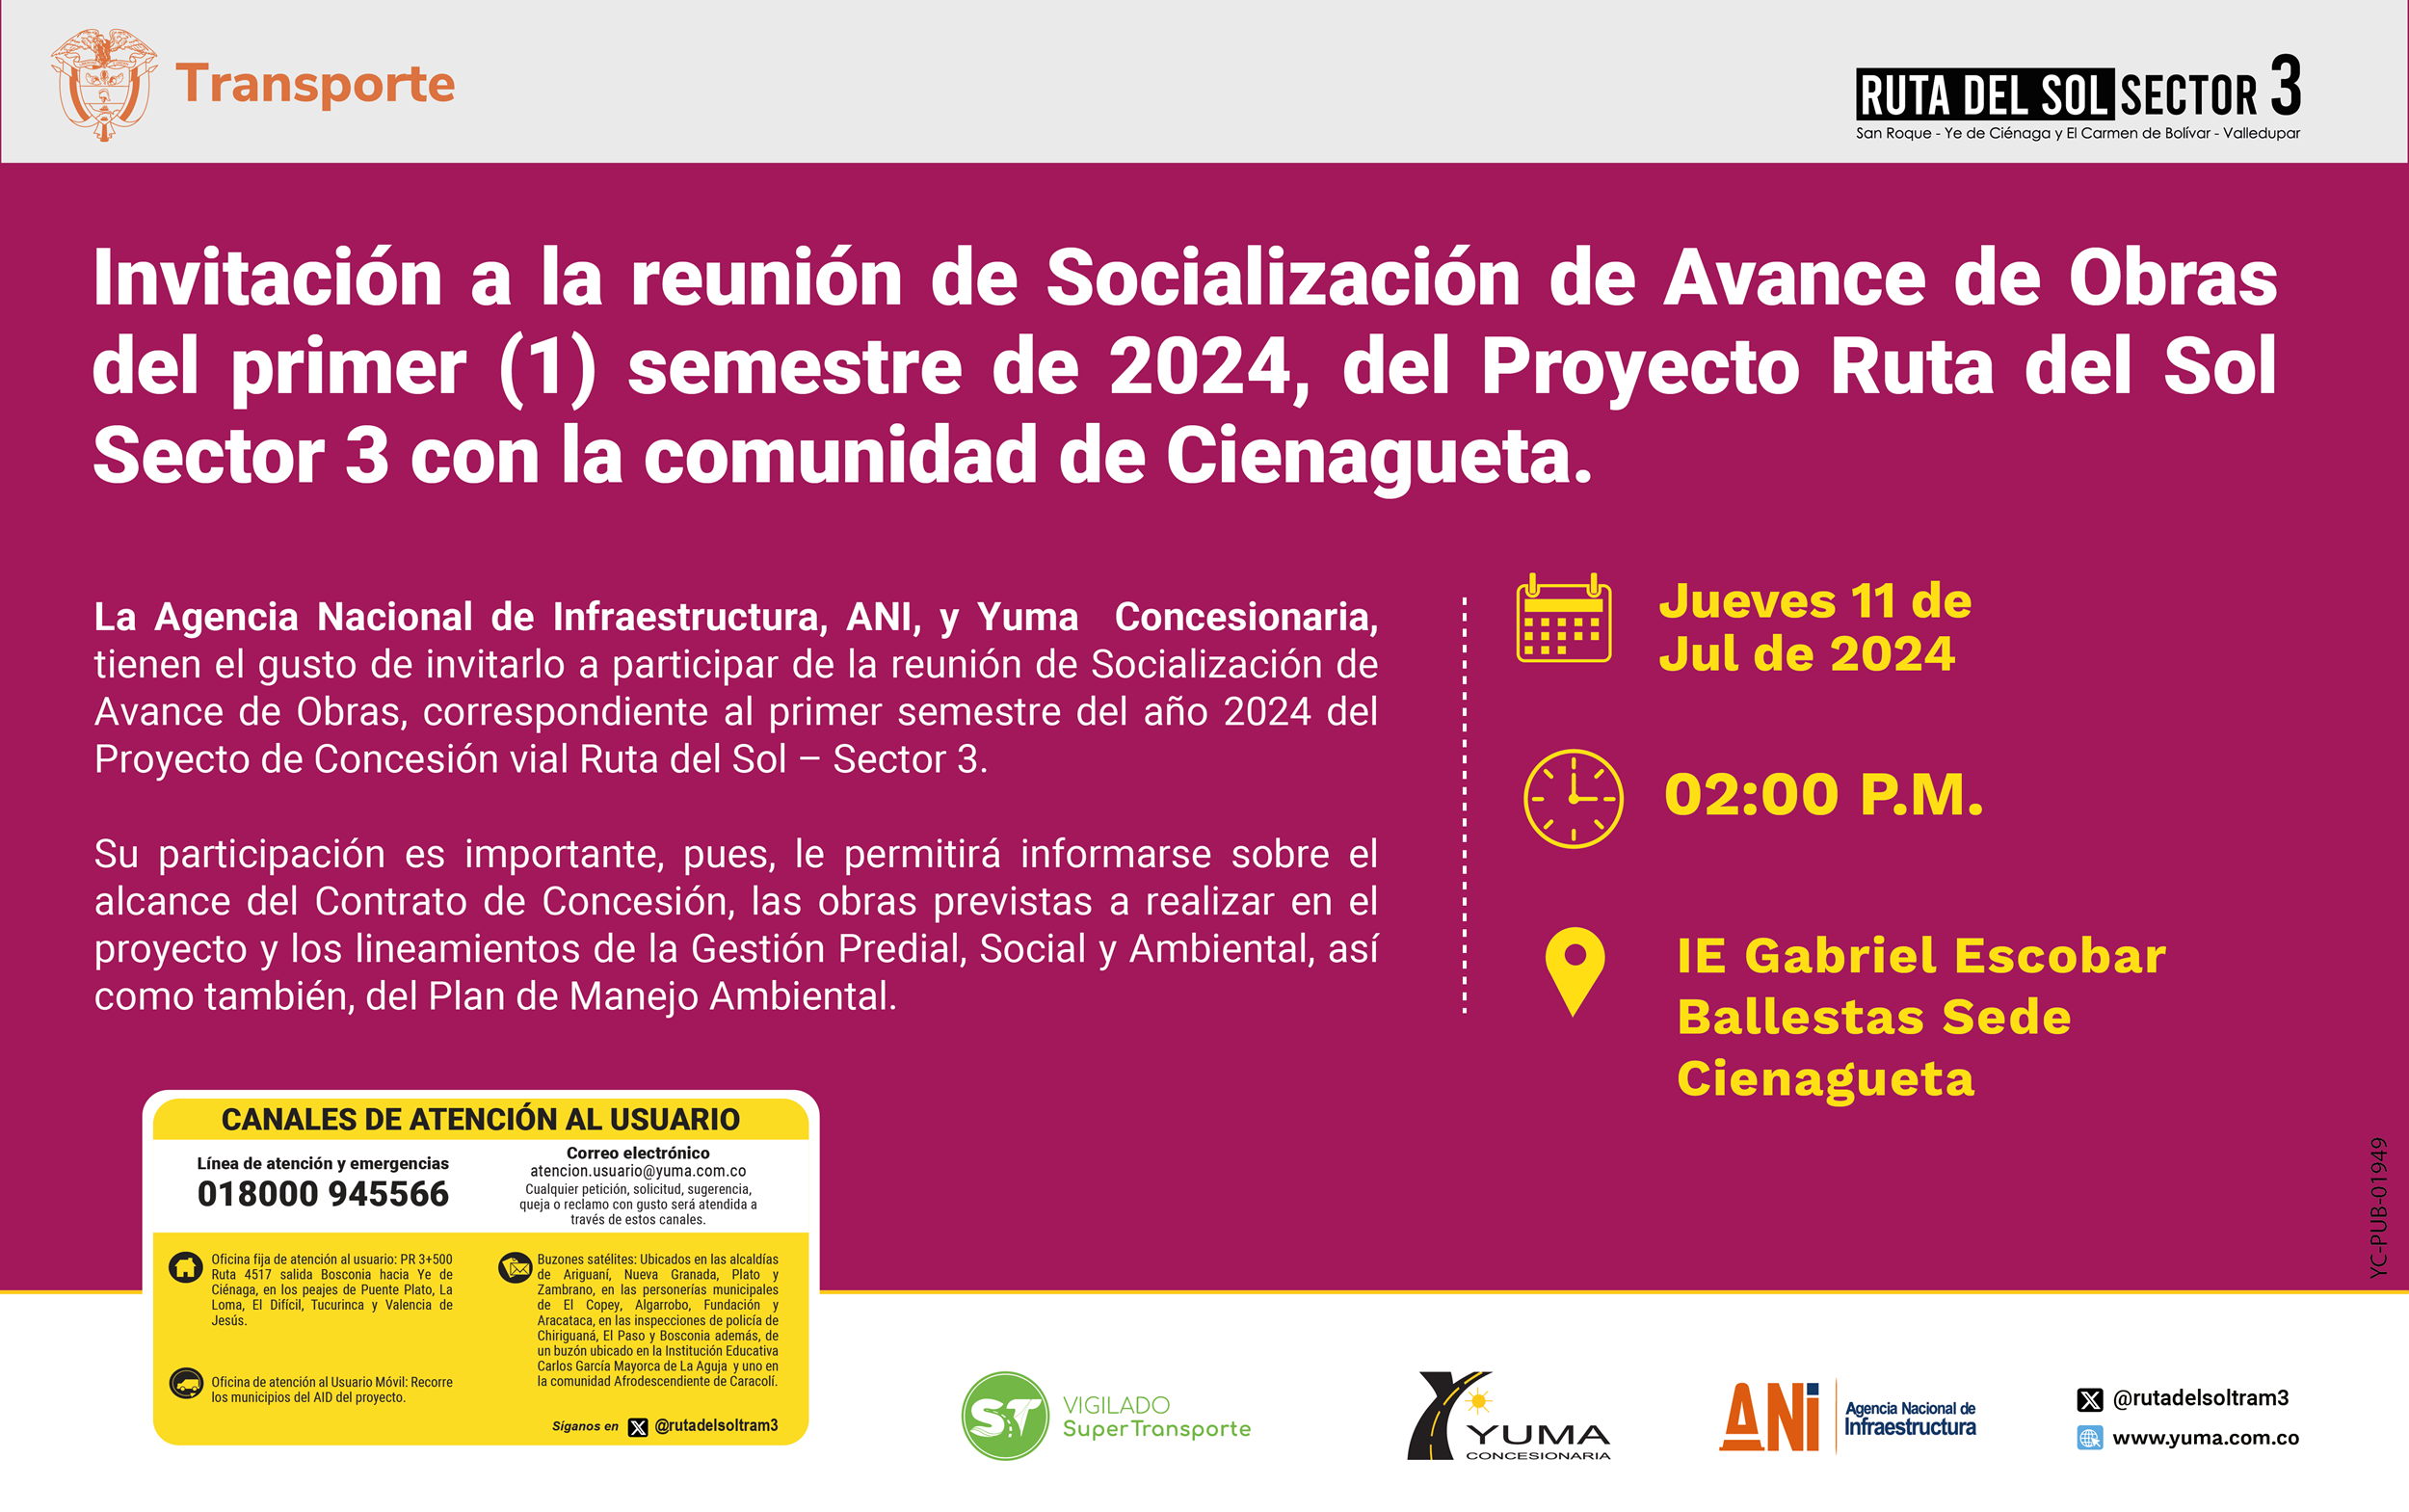 En este momento estás viendo Invitación a la reunión de Socialización de Avance de Obras del primer semestre 2024 con la comunidad de Cienagueta